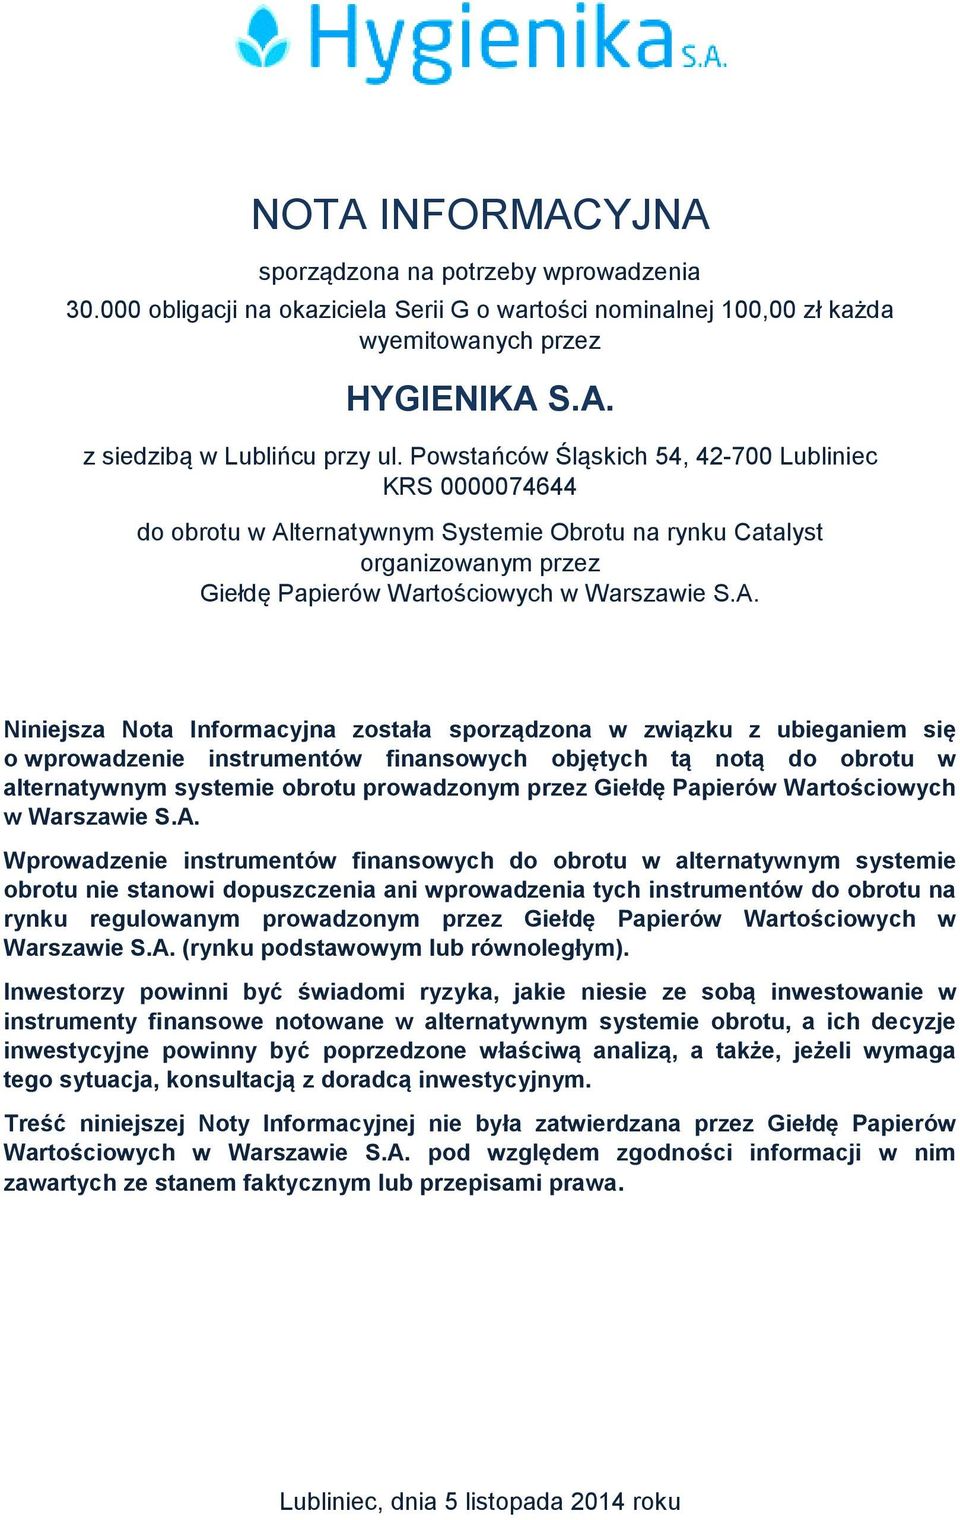 ternatywnym Systemie Obrotu na rynku Catalyst organizowanym przez Giełdę Papierów Wartościowych w Warszawie S.A.